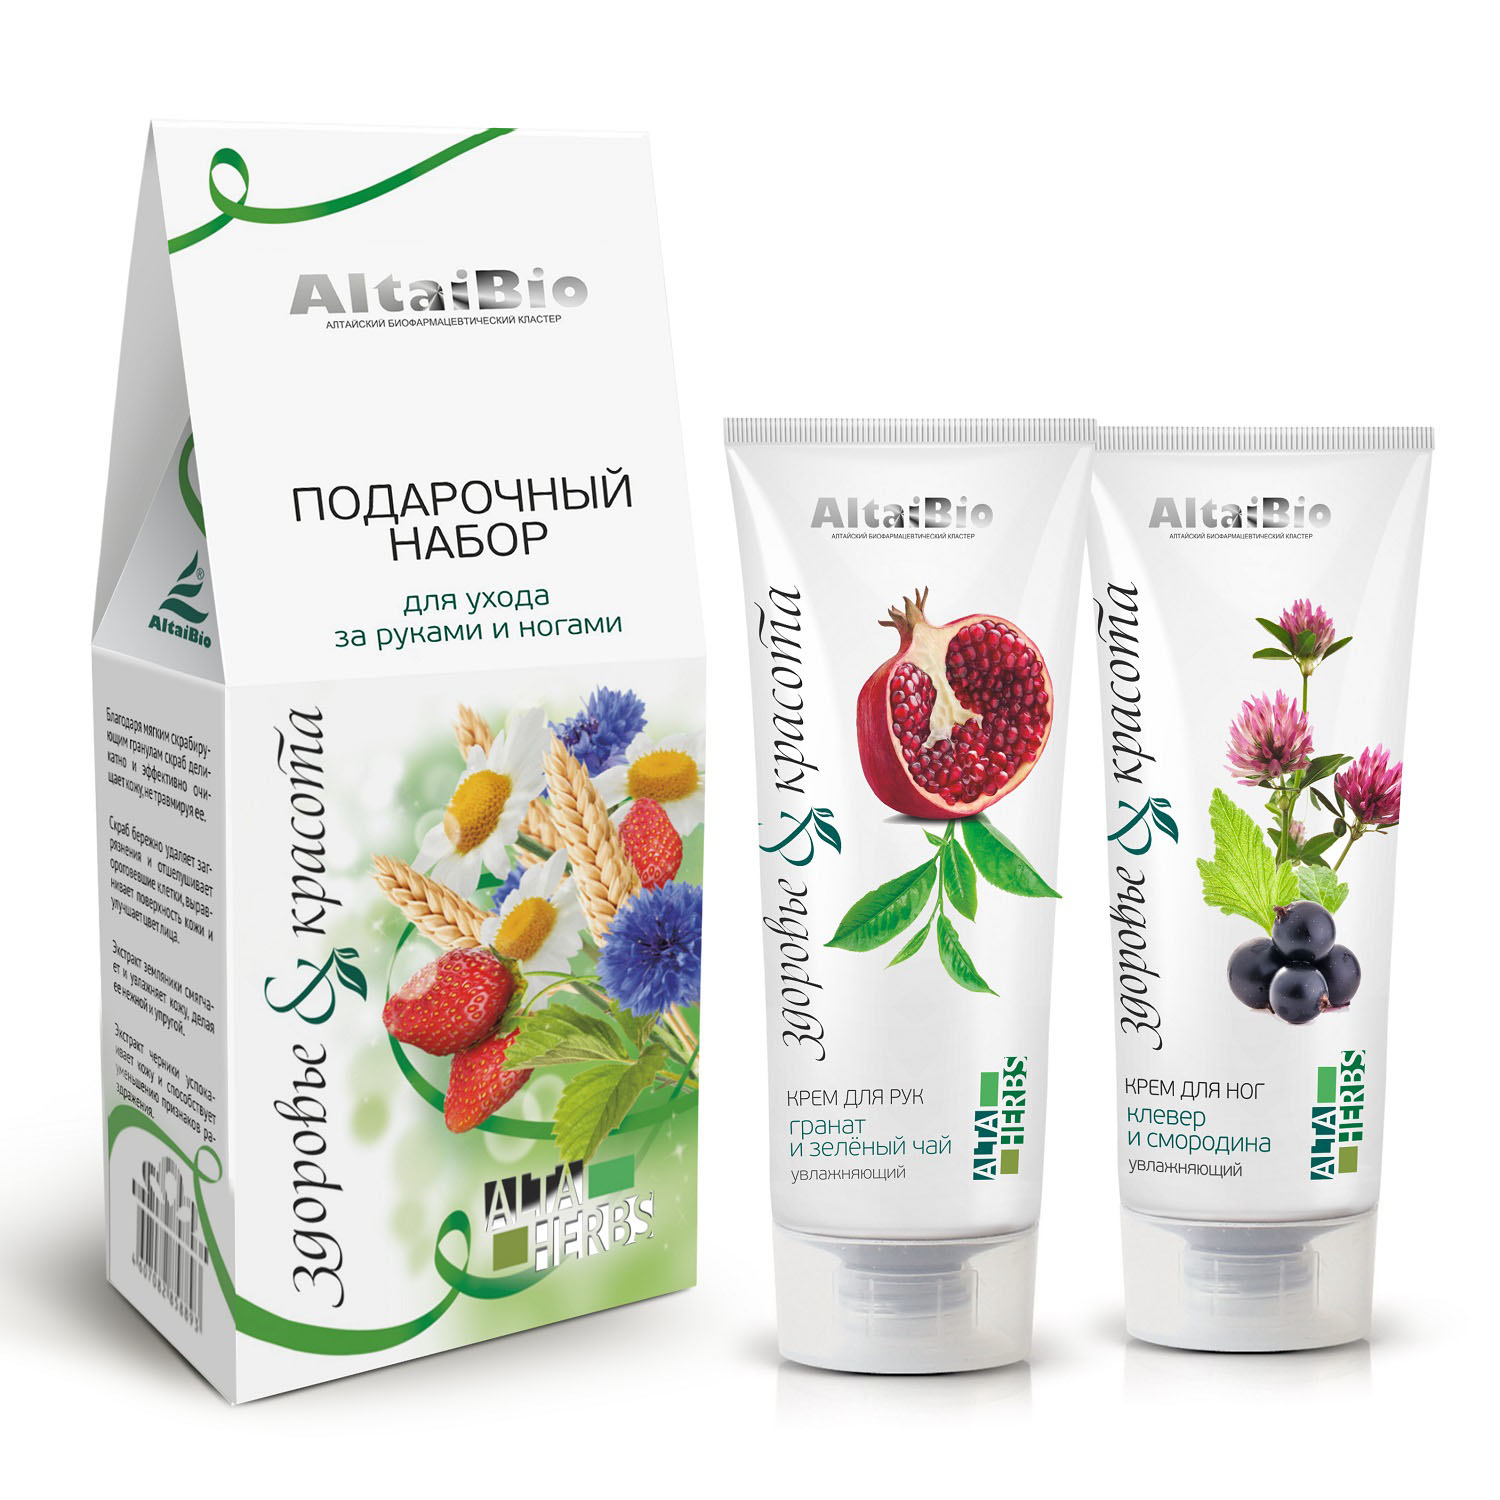 AltaiBio Подарочный набор для ухода за руками и ногами Здоровье и красота (AltaiBio, AltaHerbs)